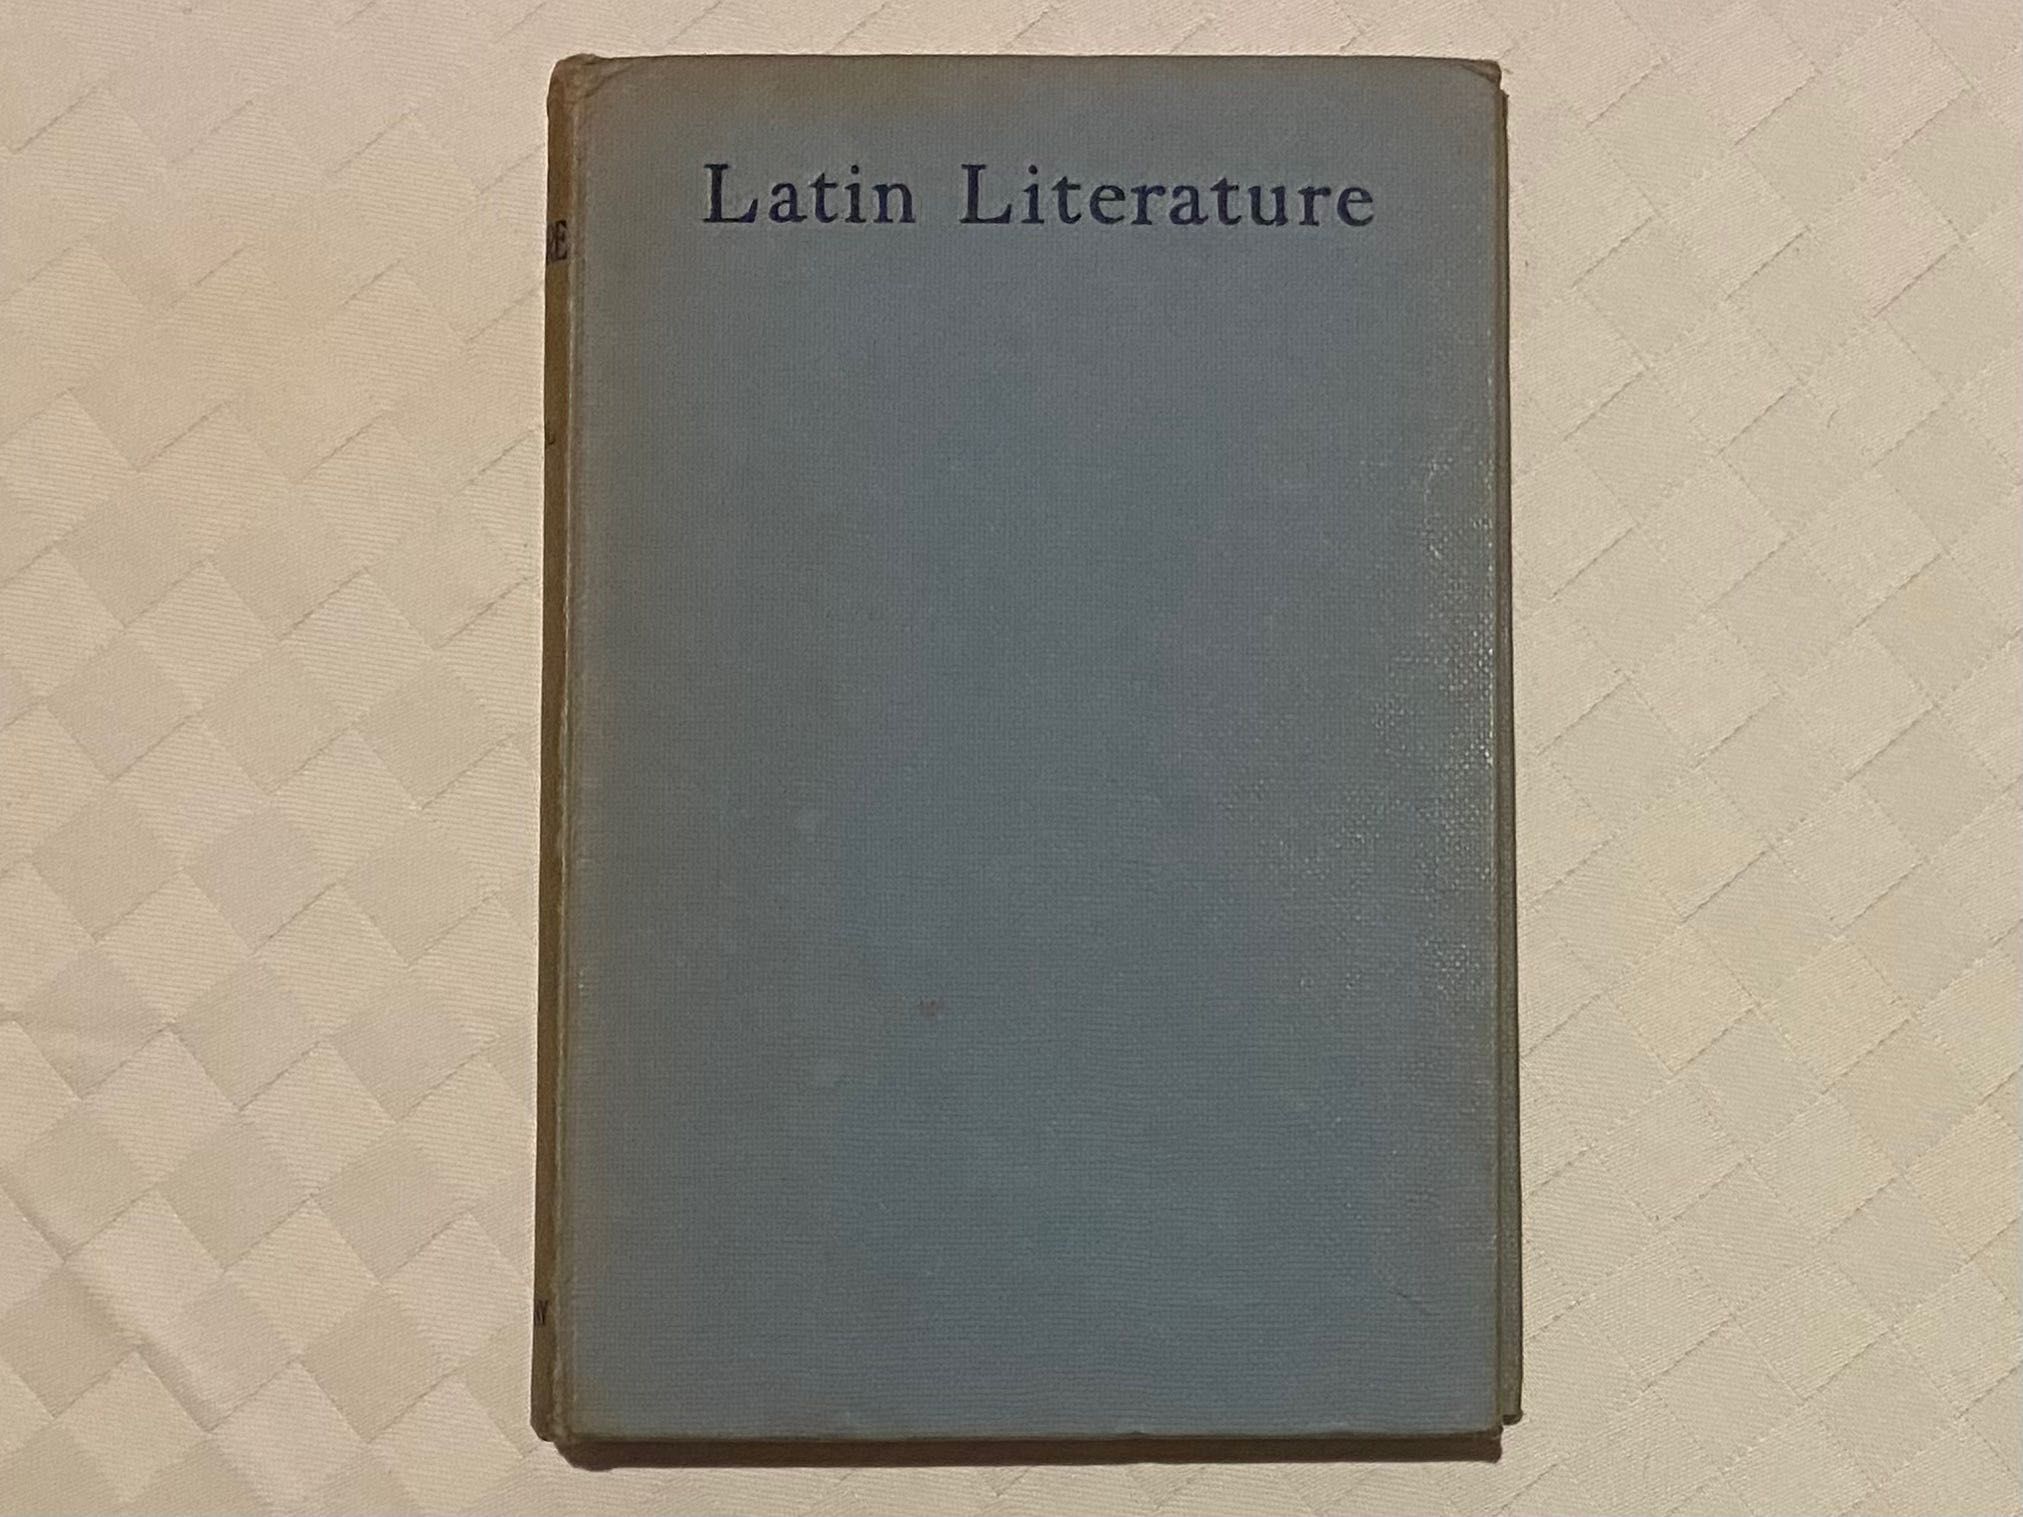 Latin Literature by J. W. MacKail